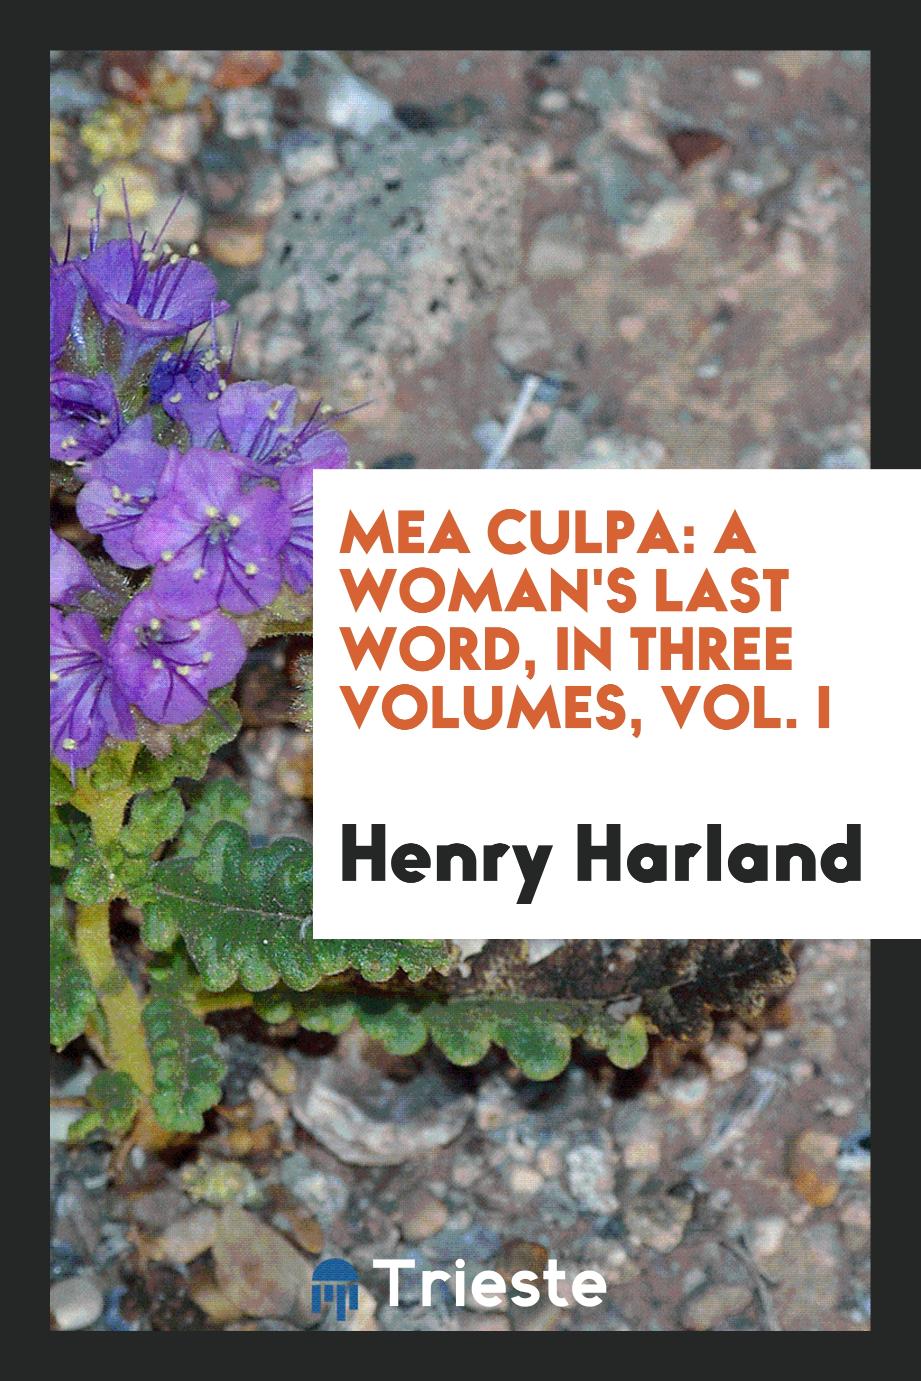 Mea culpa: a woman's last word, in three volumes, Vol. I